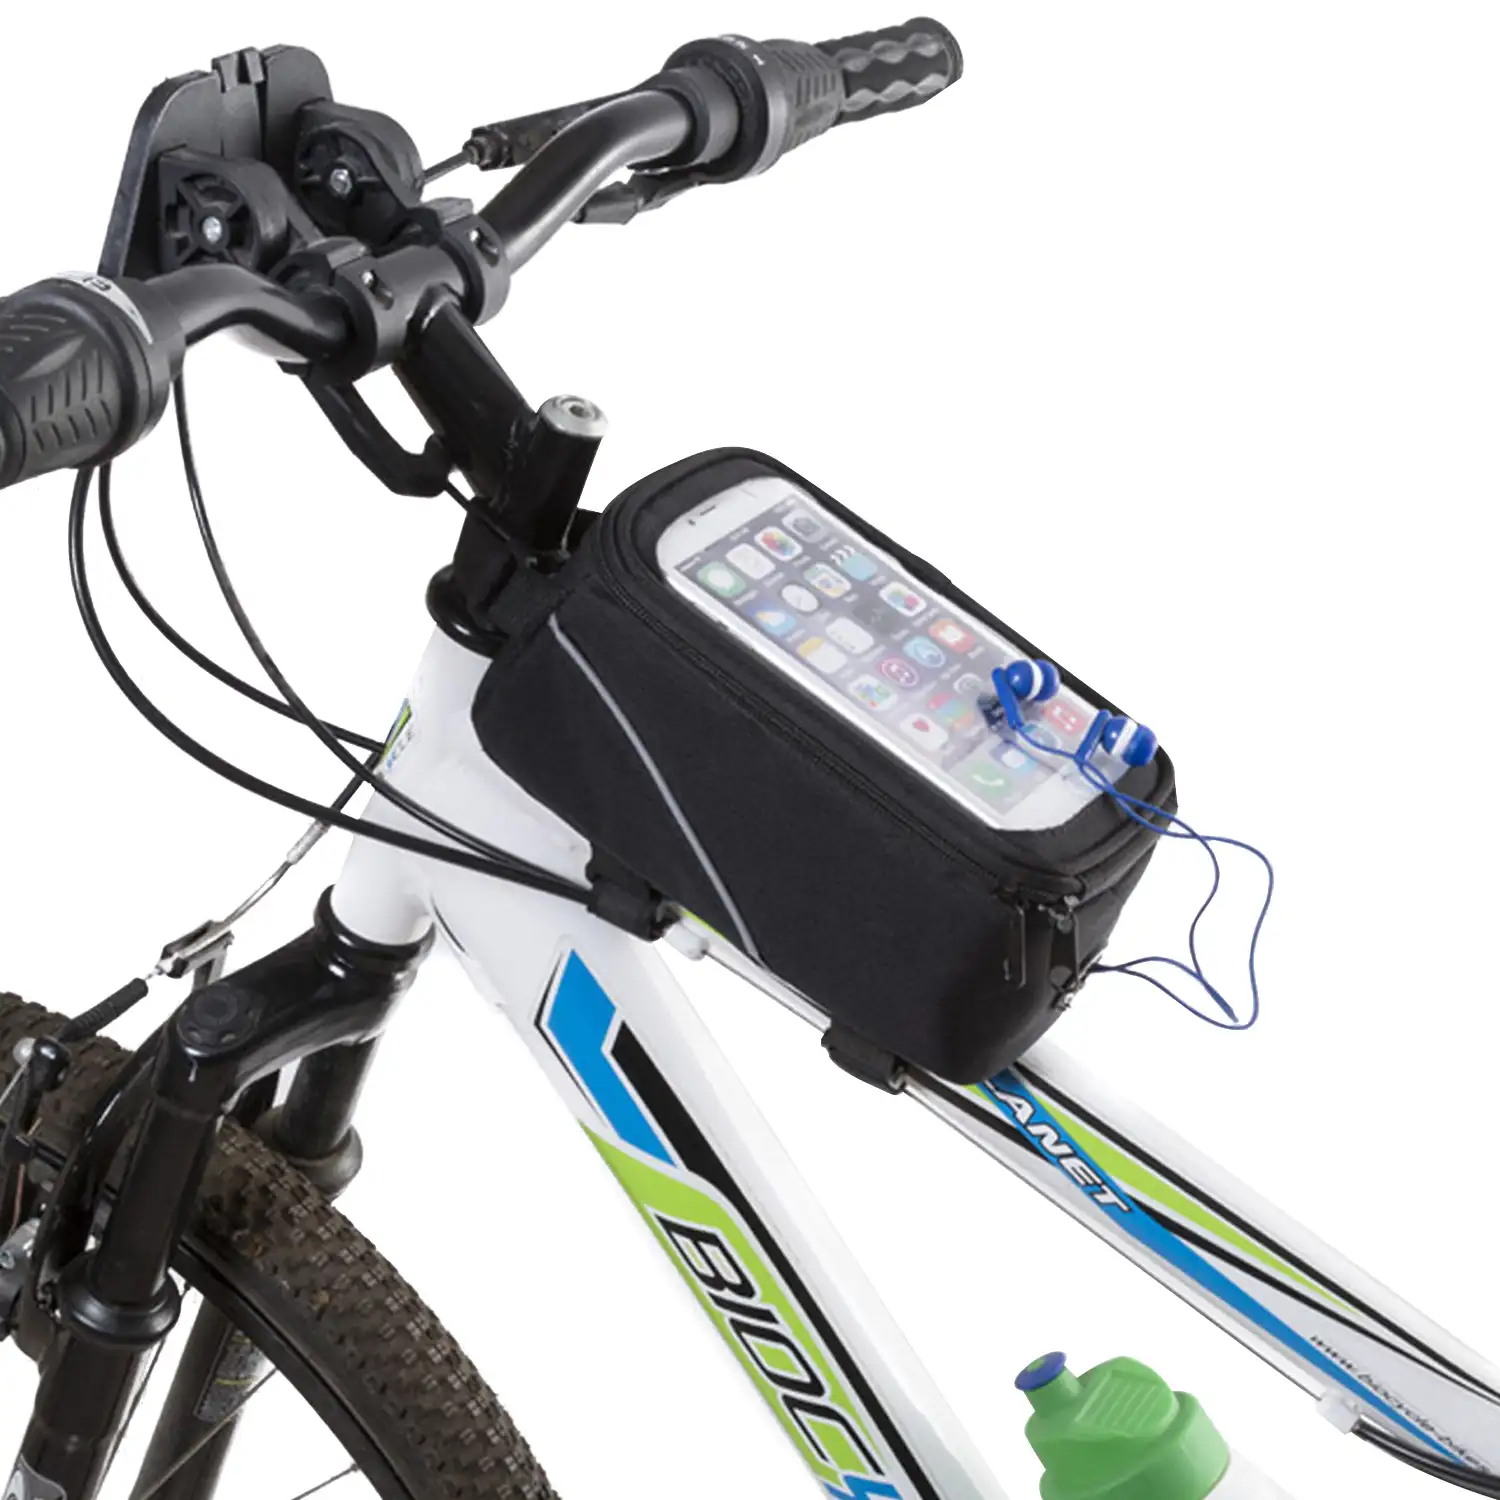 Bolsa para bicicleta Rigon con frontal transparente táctil, para smartphones hasta 6,3 pulgadas. Salida de auriculares y cierre de cremallera. Acople en barra o manillar.